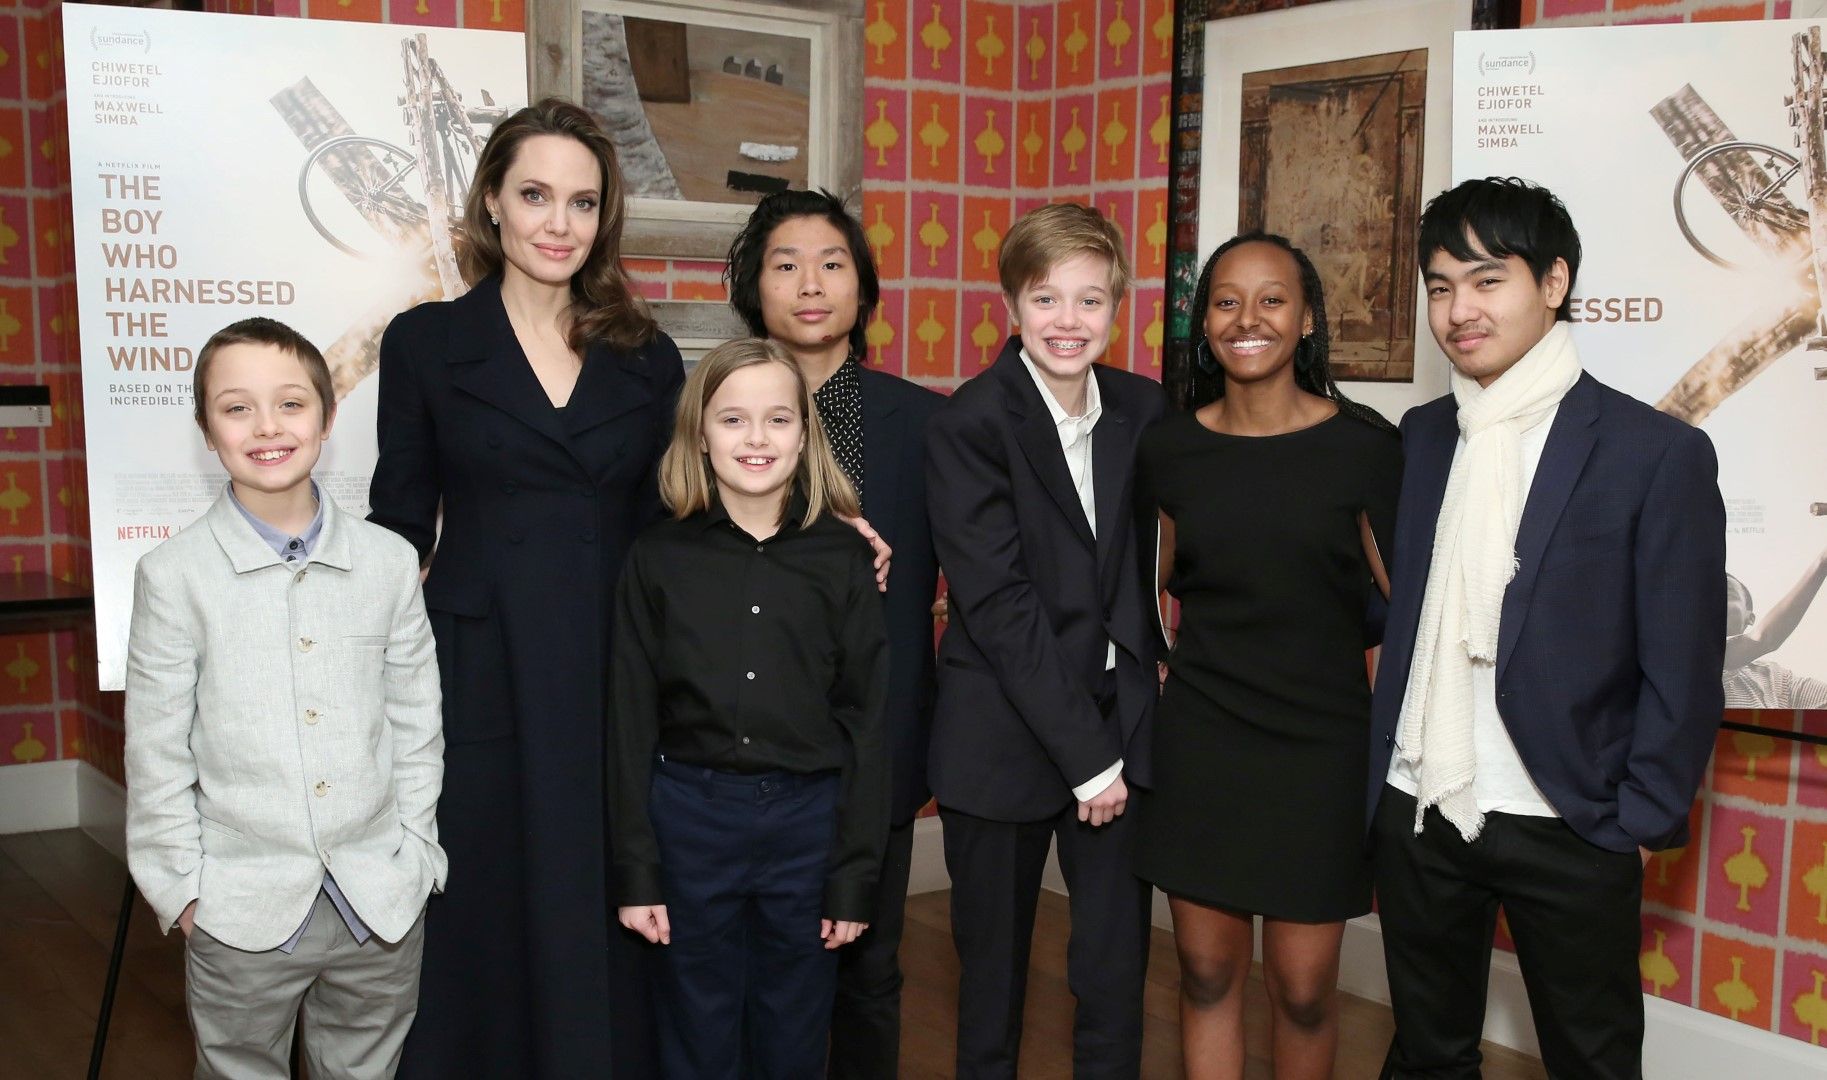 Анджелина Джоли с децата си Нокс, Вивиан, Пак, Шайло, Захара и Мадокс на специалната прожекция на Тhe Boy Who Harnessed the Wind през февруари 2019 в Ню Йорк